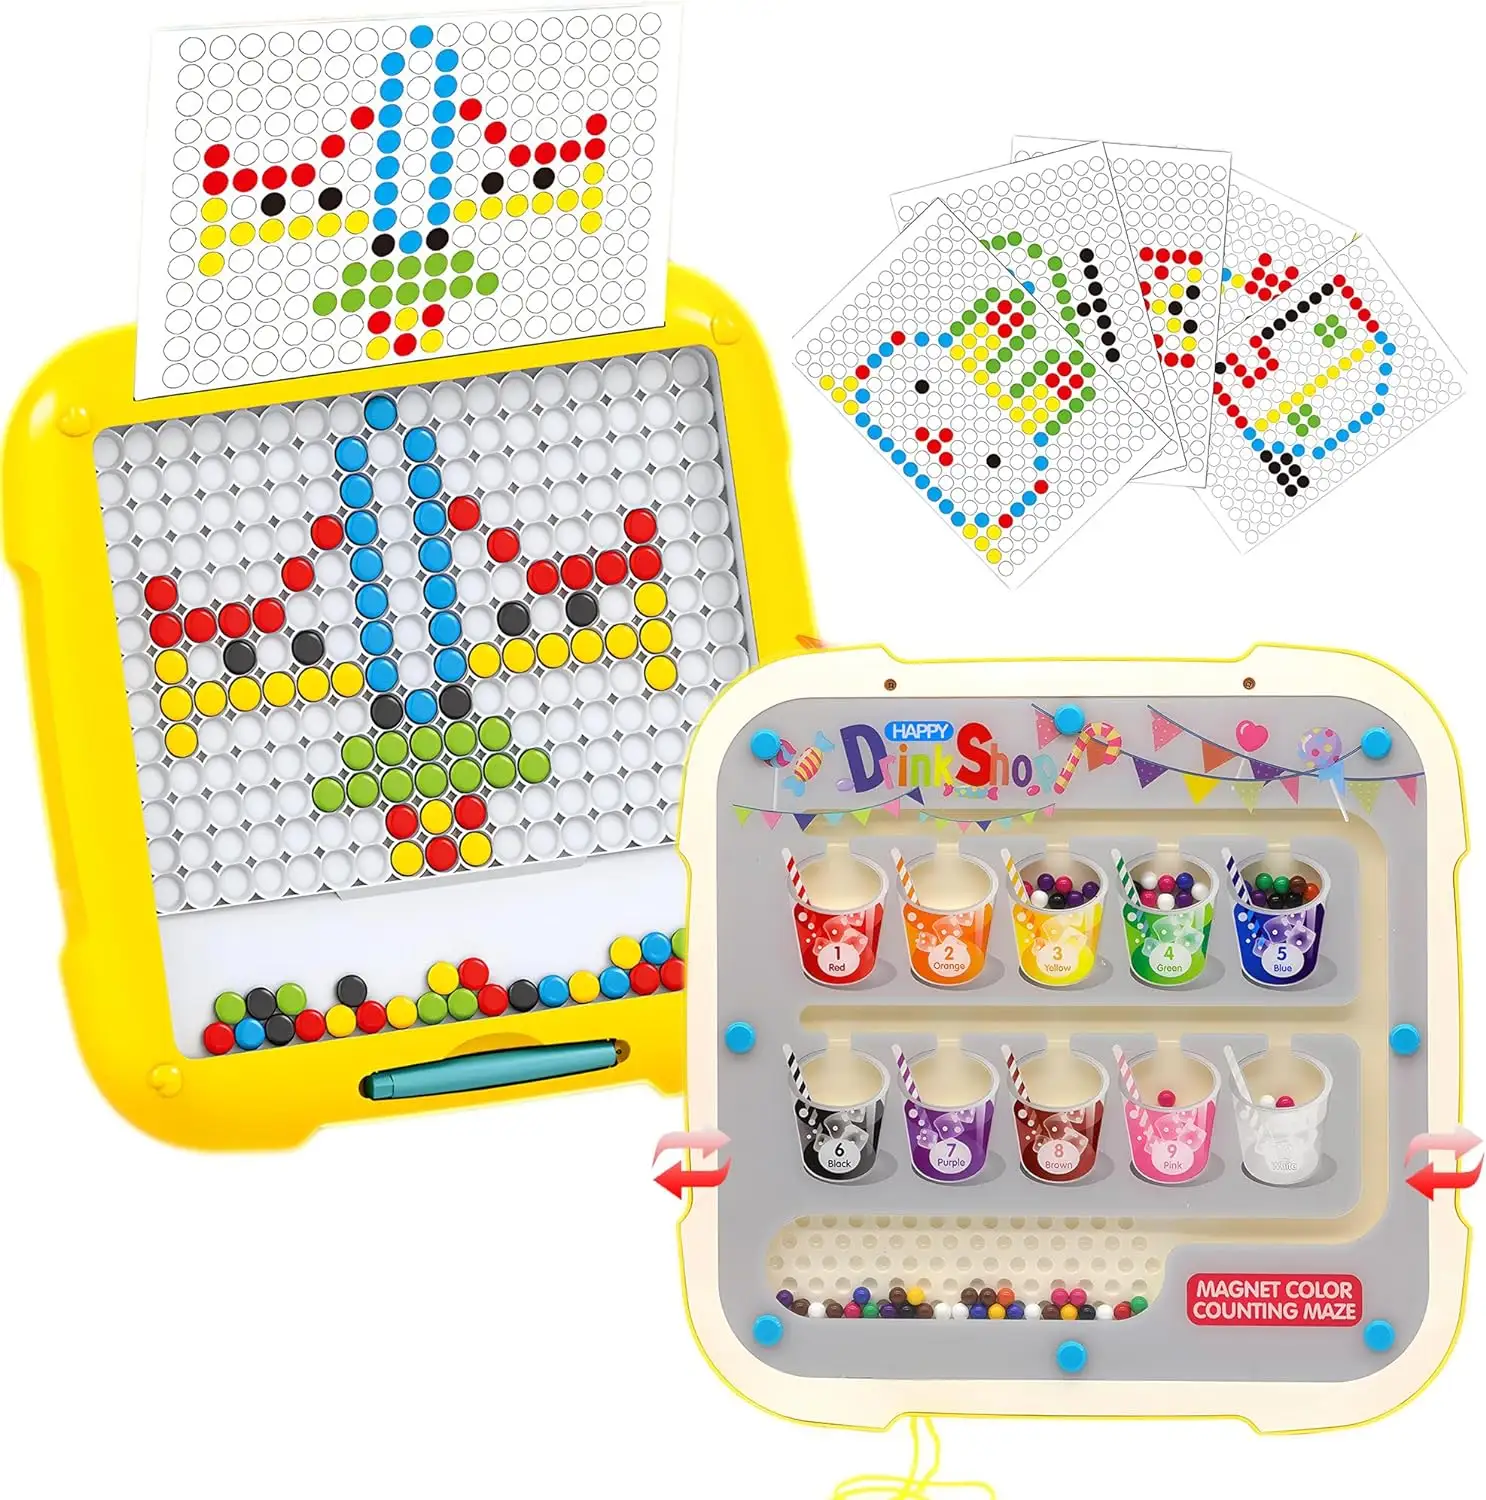 Tablero de dibujo magnético 2 en 1, tablero magnético de laberinto de números y colores magnéticos para niños con tablero de juego de rompecabezas PenSTEM magnético